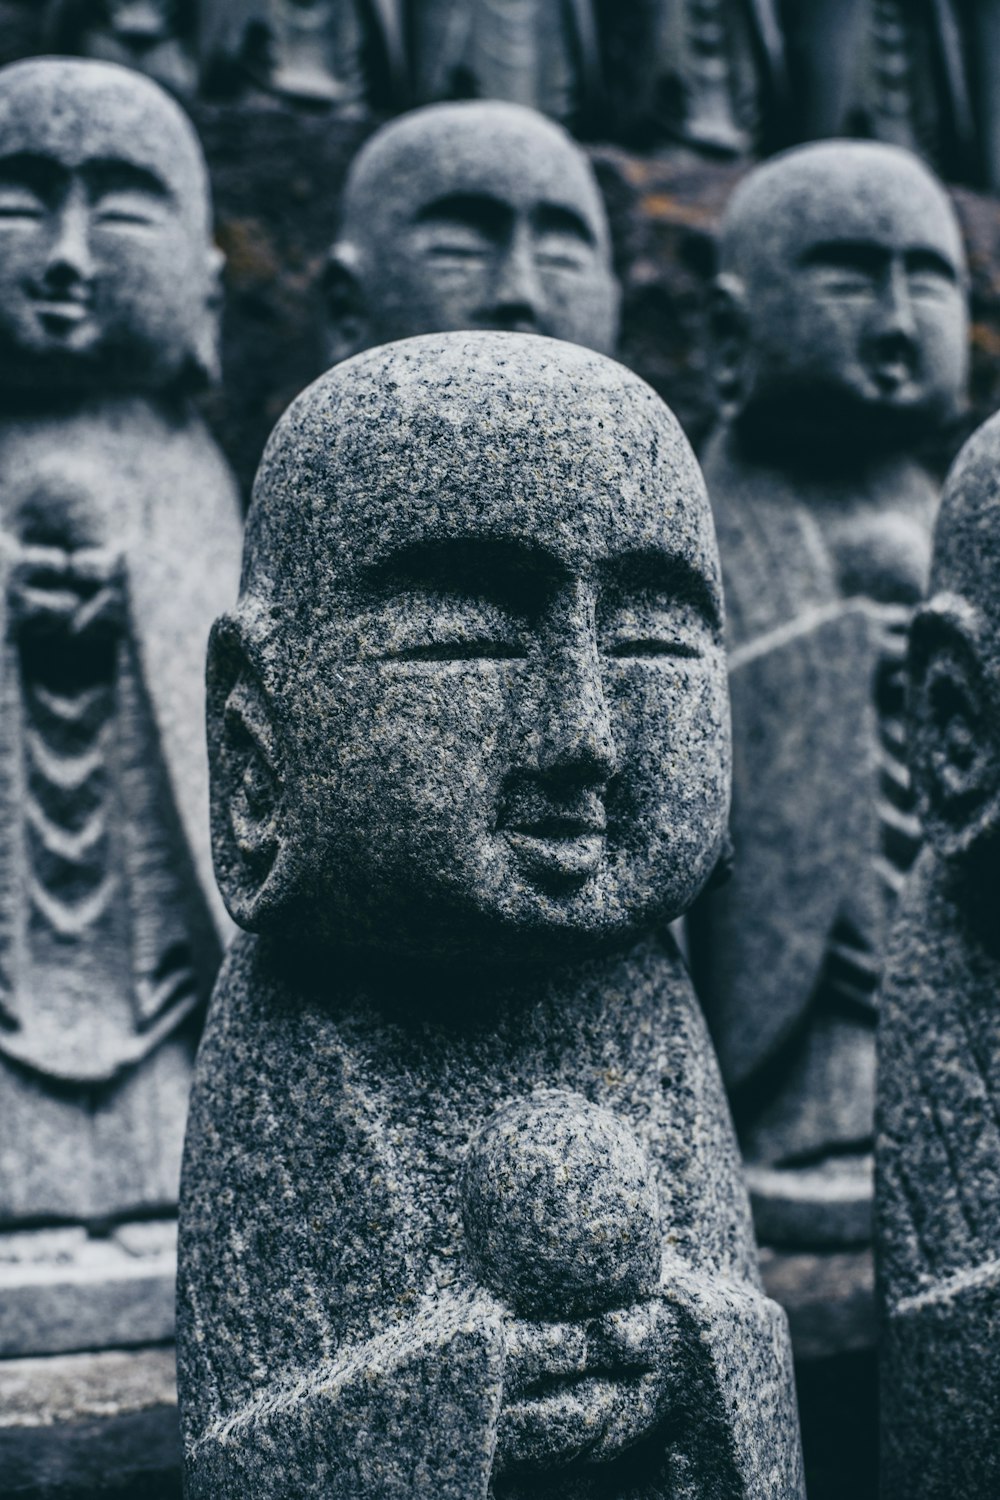 Budai statuettes